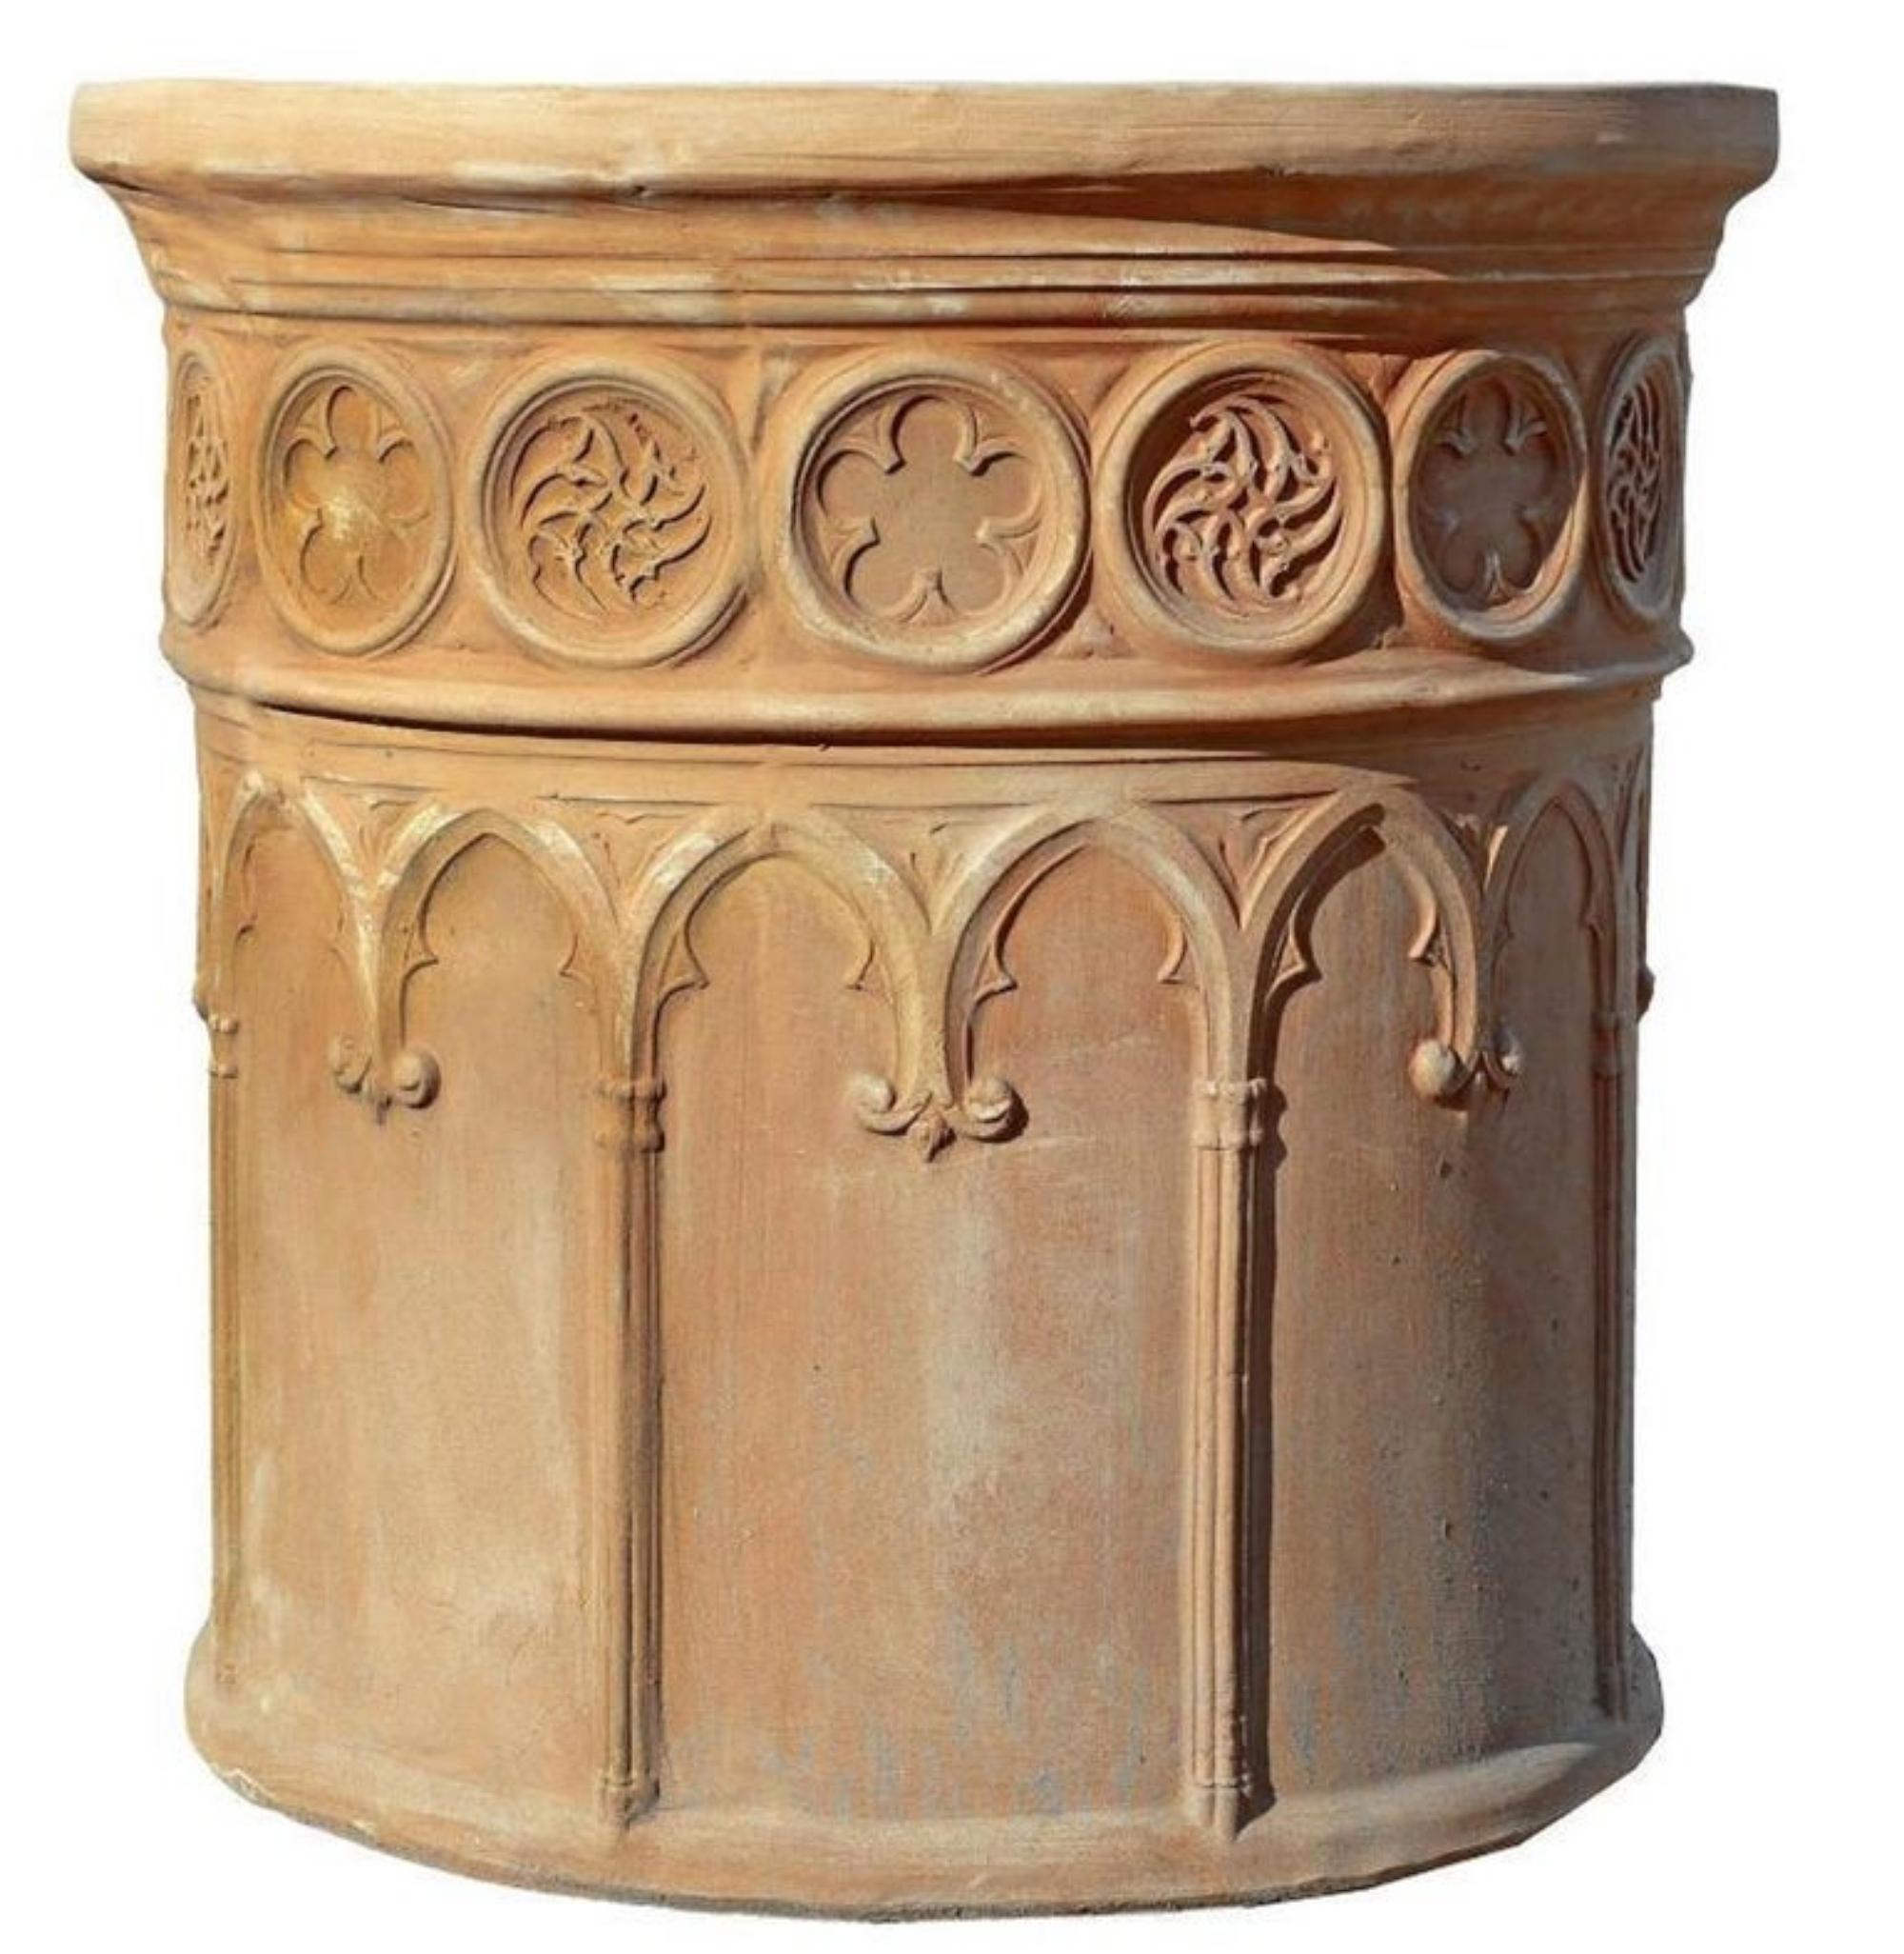 Vase corinthien.
Terre cuite toscane.
20ème siècle.
Mesures : diamètre : 60 cm.
Diamètre intérieur : 55 cm.
Profondeur : 50 cm.
Bonnes conditions.